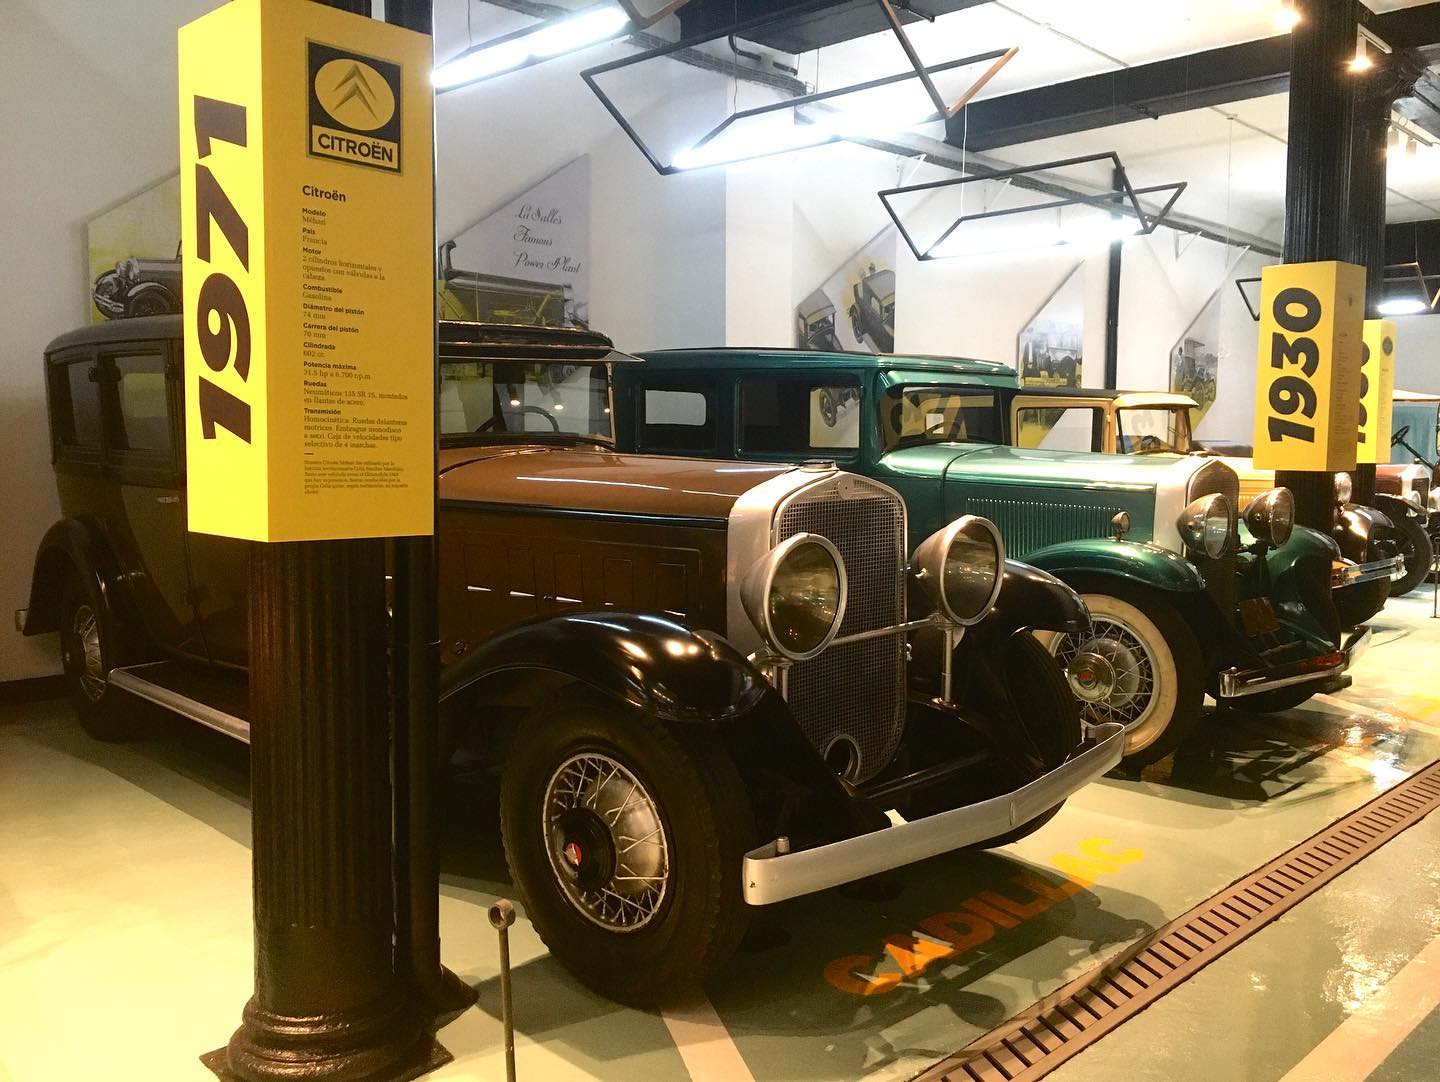 Museo del Automovil "El Garaje"